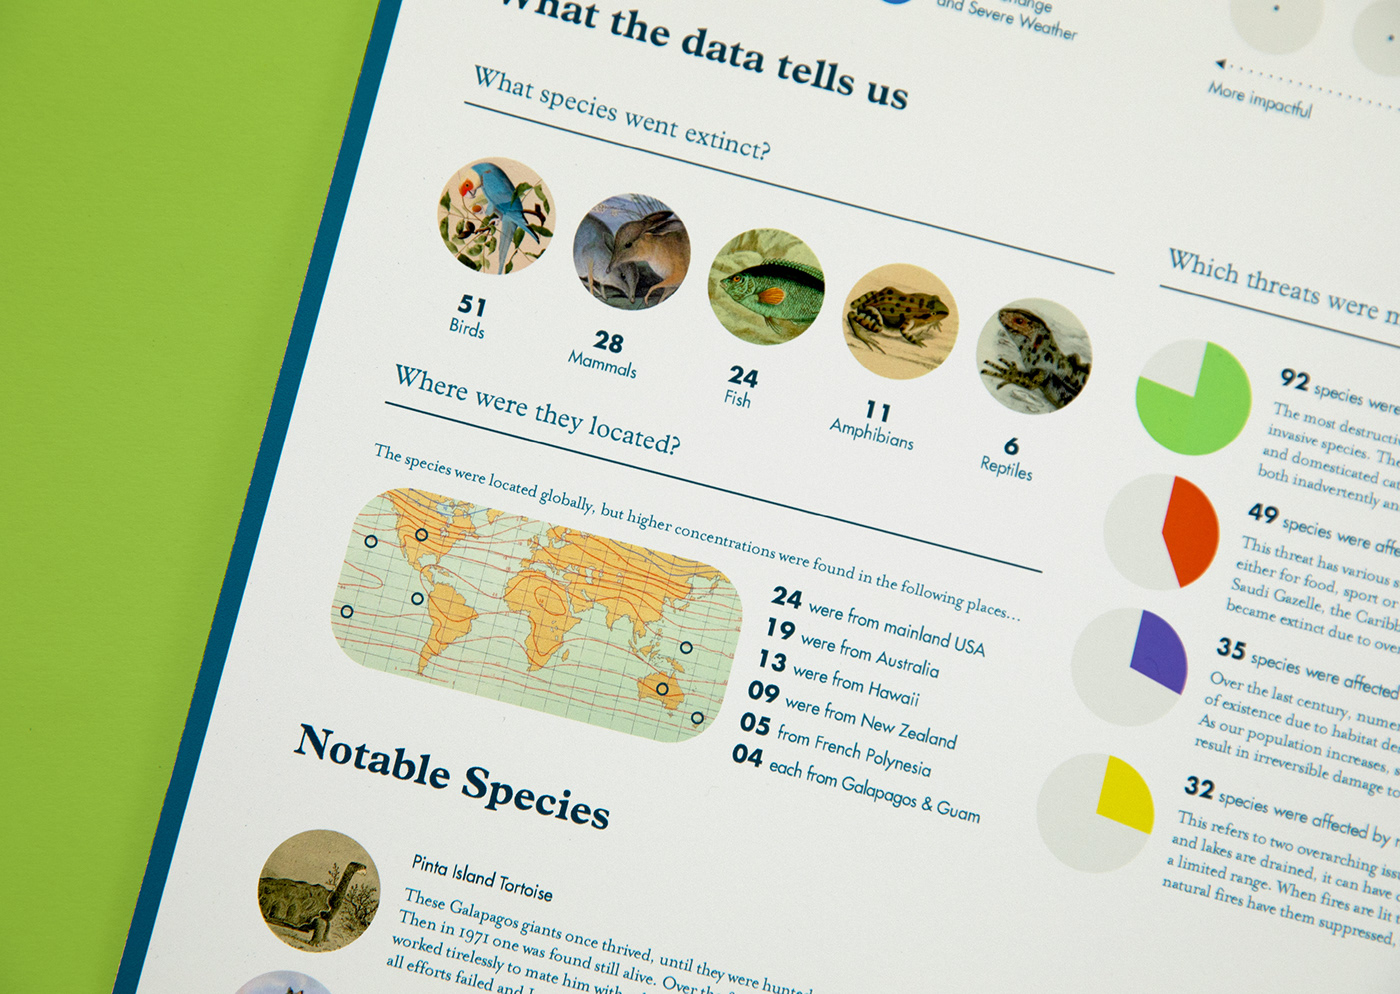 Data Viz data visualization data visualisation infographic Extinction wildlife Nature conservation IUCN timeline